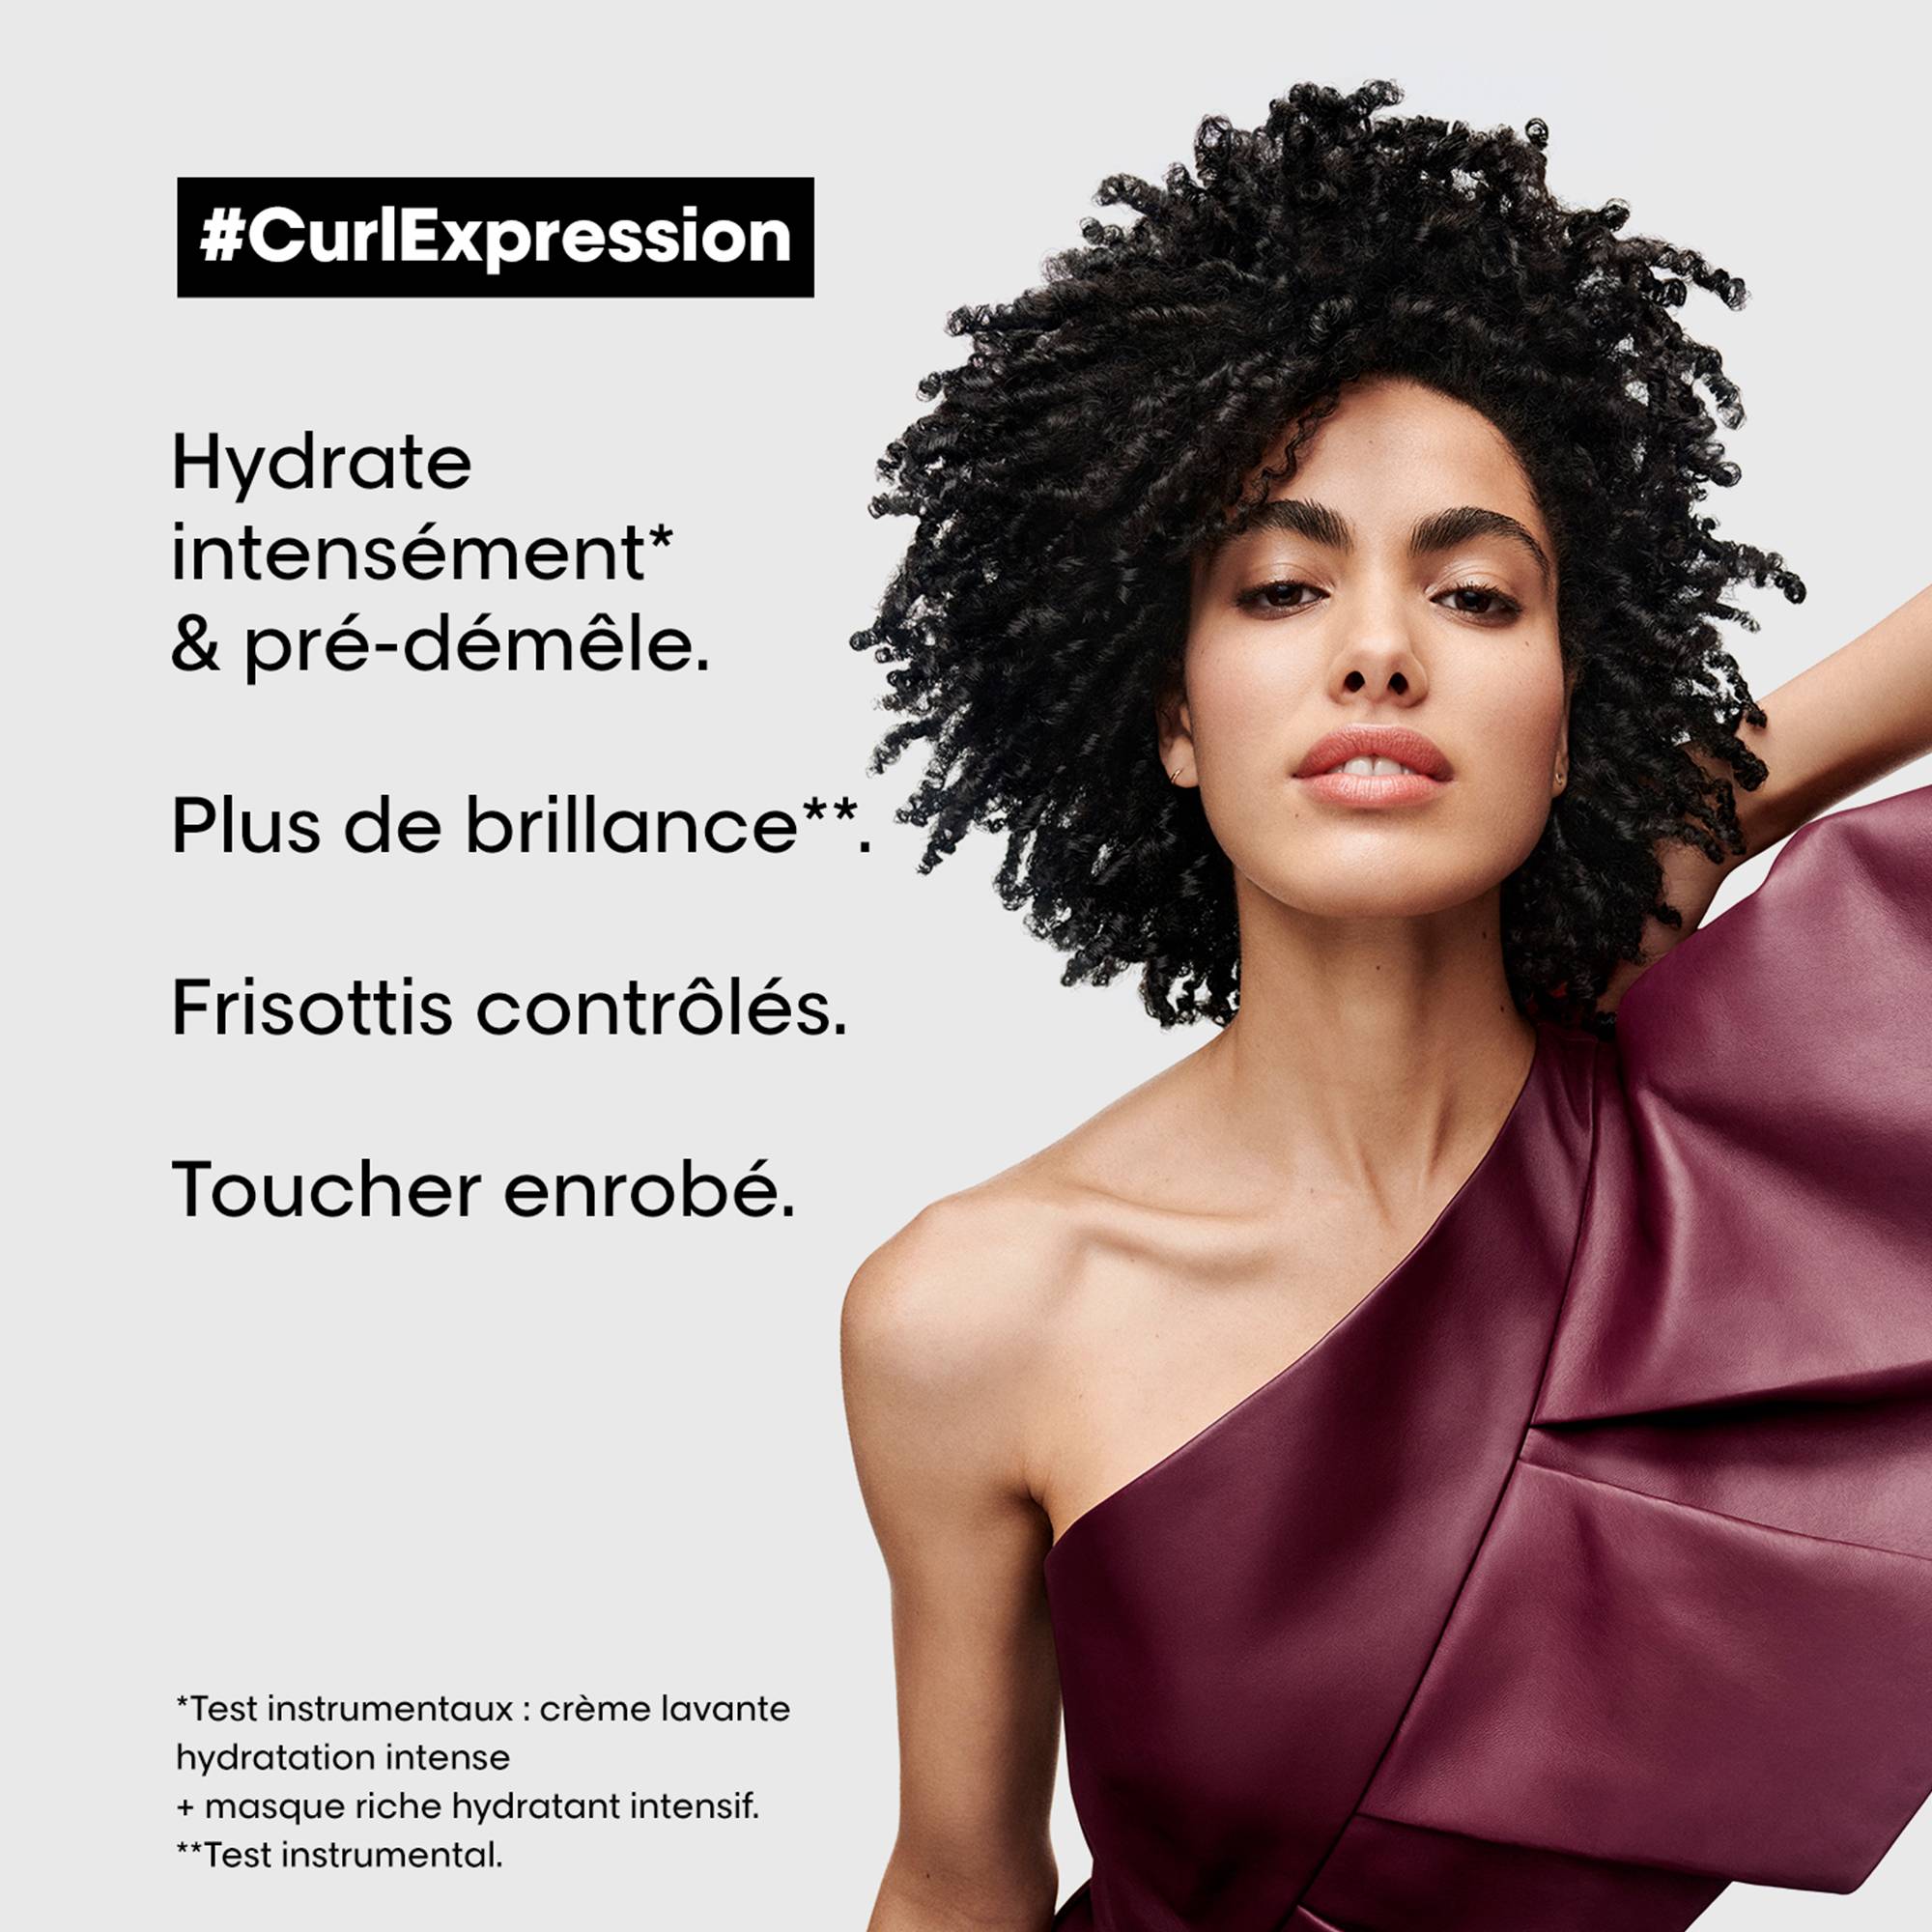 Crème hydratante intensive longue durée Curl Expression de la marque L'Oréal Professionnel Contenance 200ml - 4